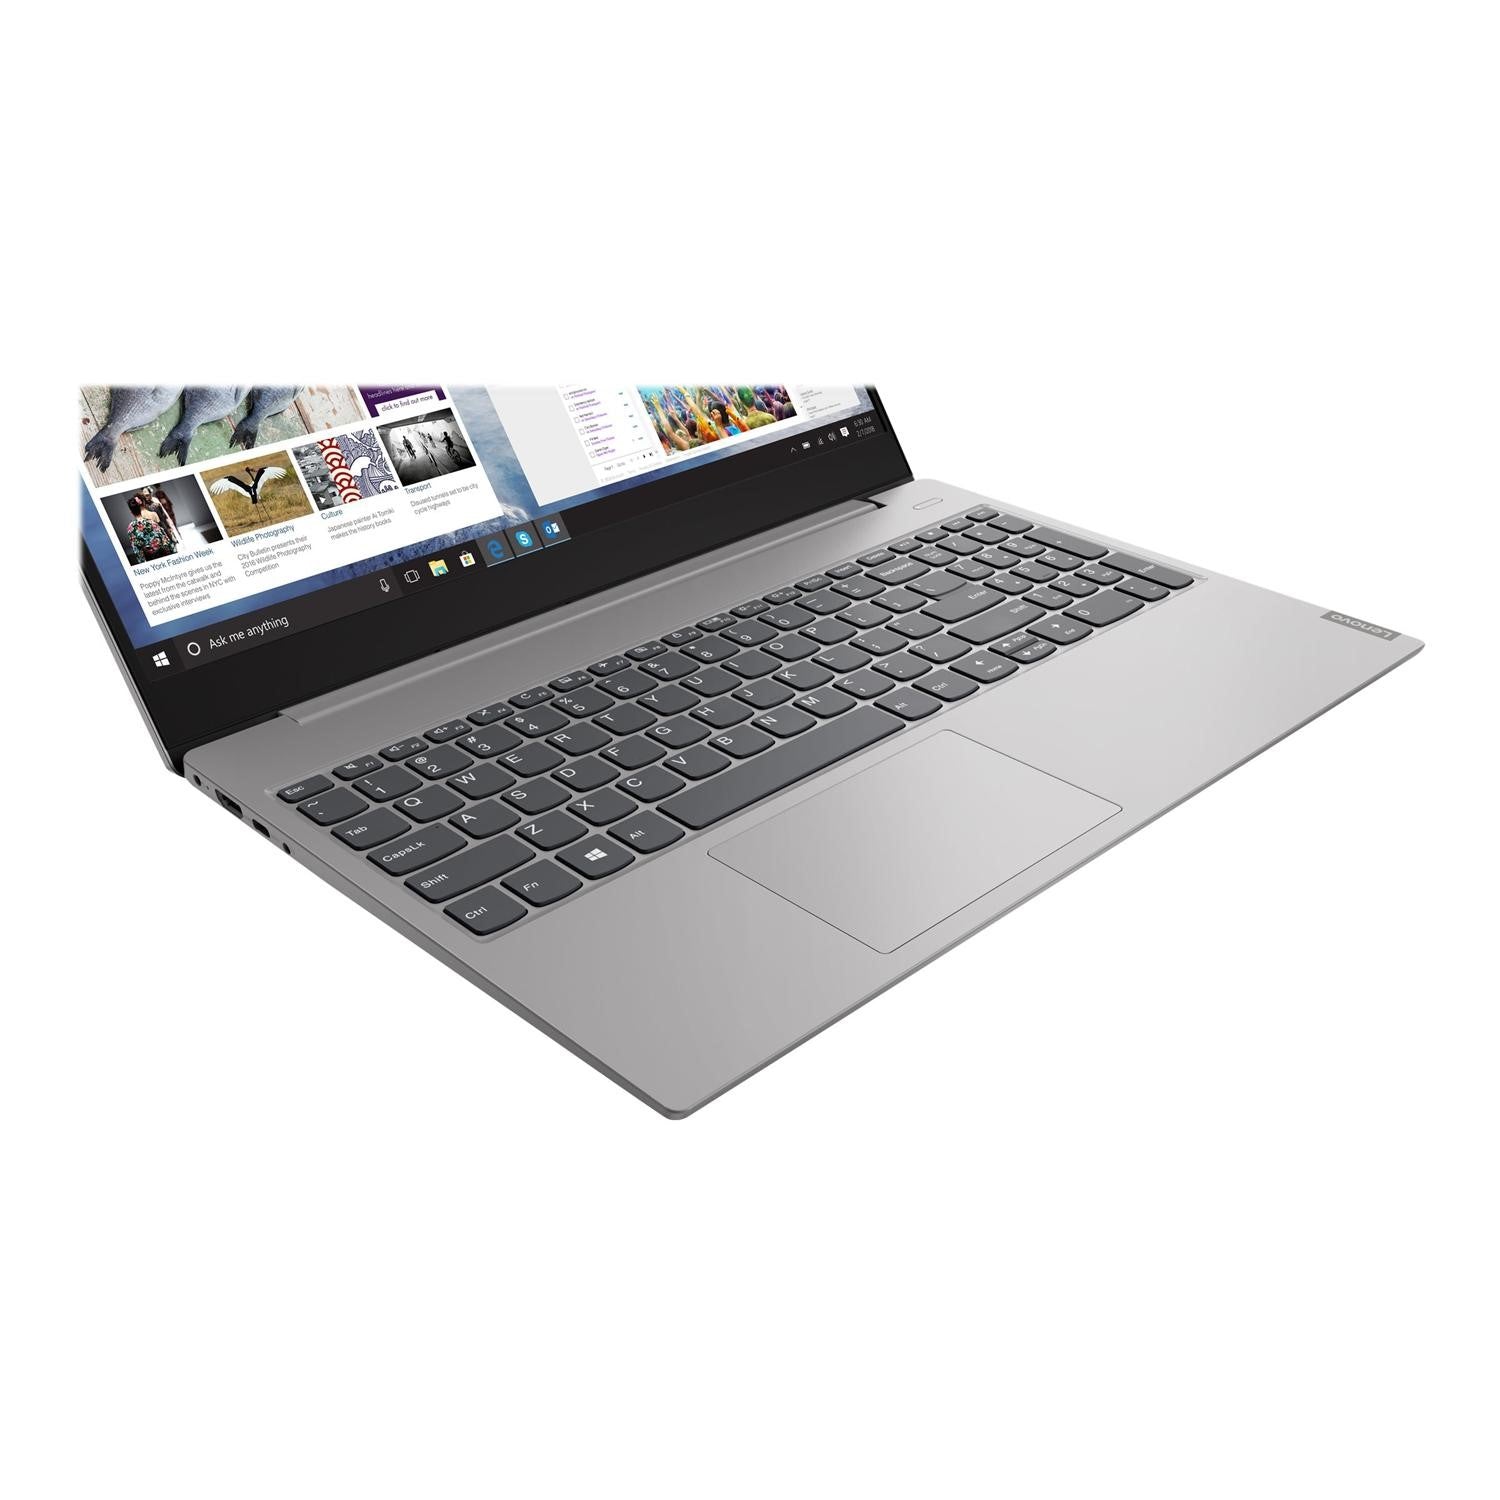 Lenovo IdeaPad S340-15IIL Laptop, Intel Core i5 Processor, 8GB RAM, 256GB SSD, 15.6" Full HD - Platinum Grey